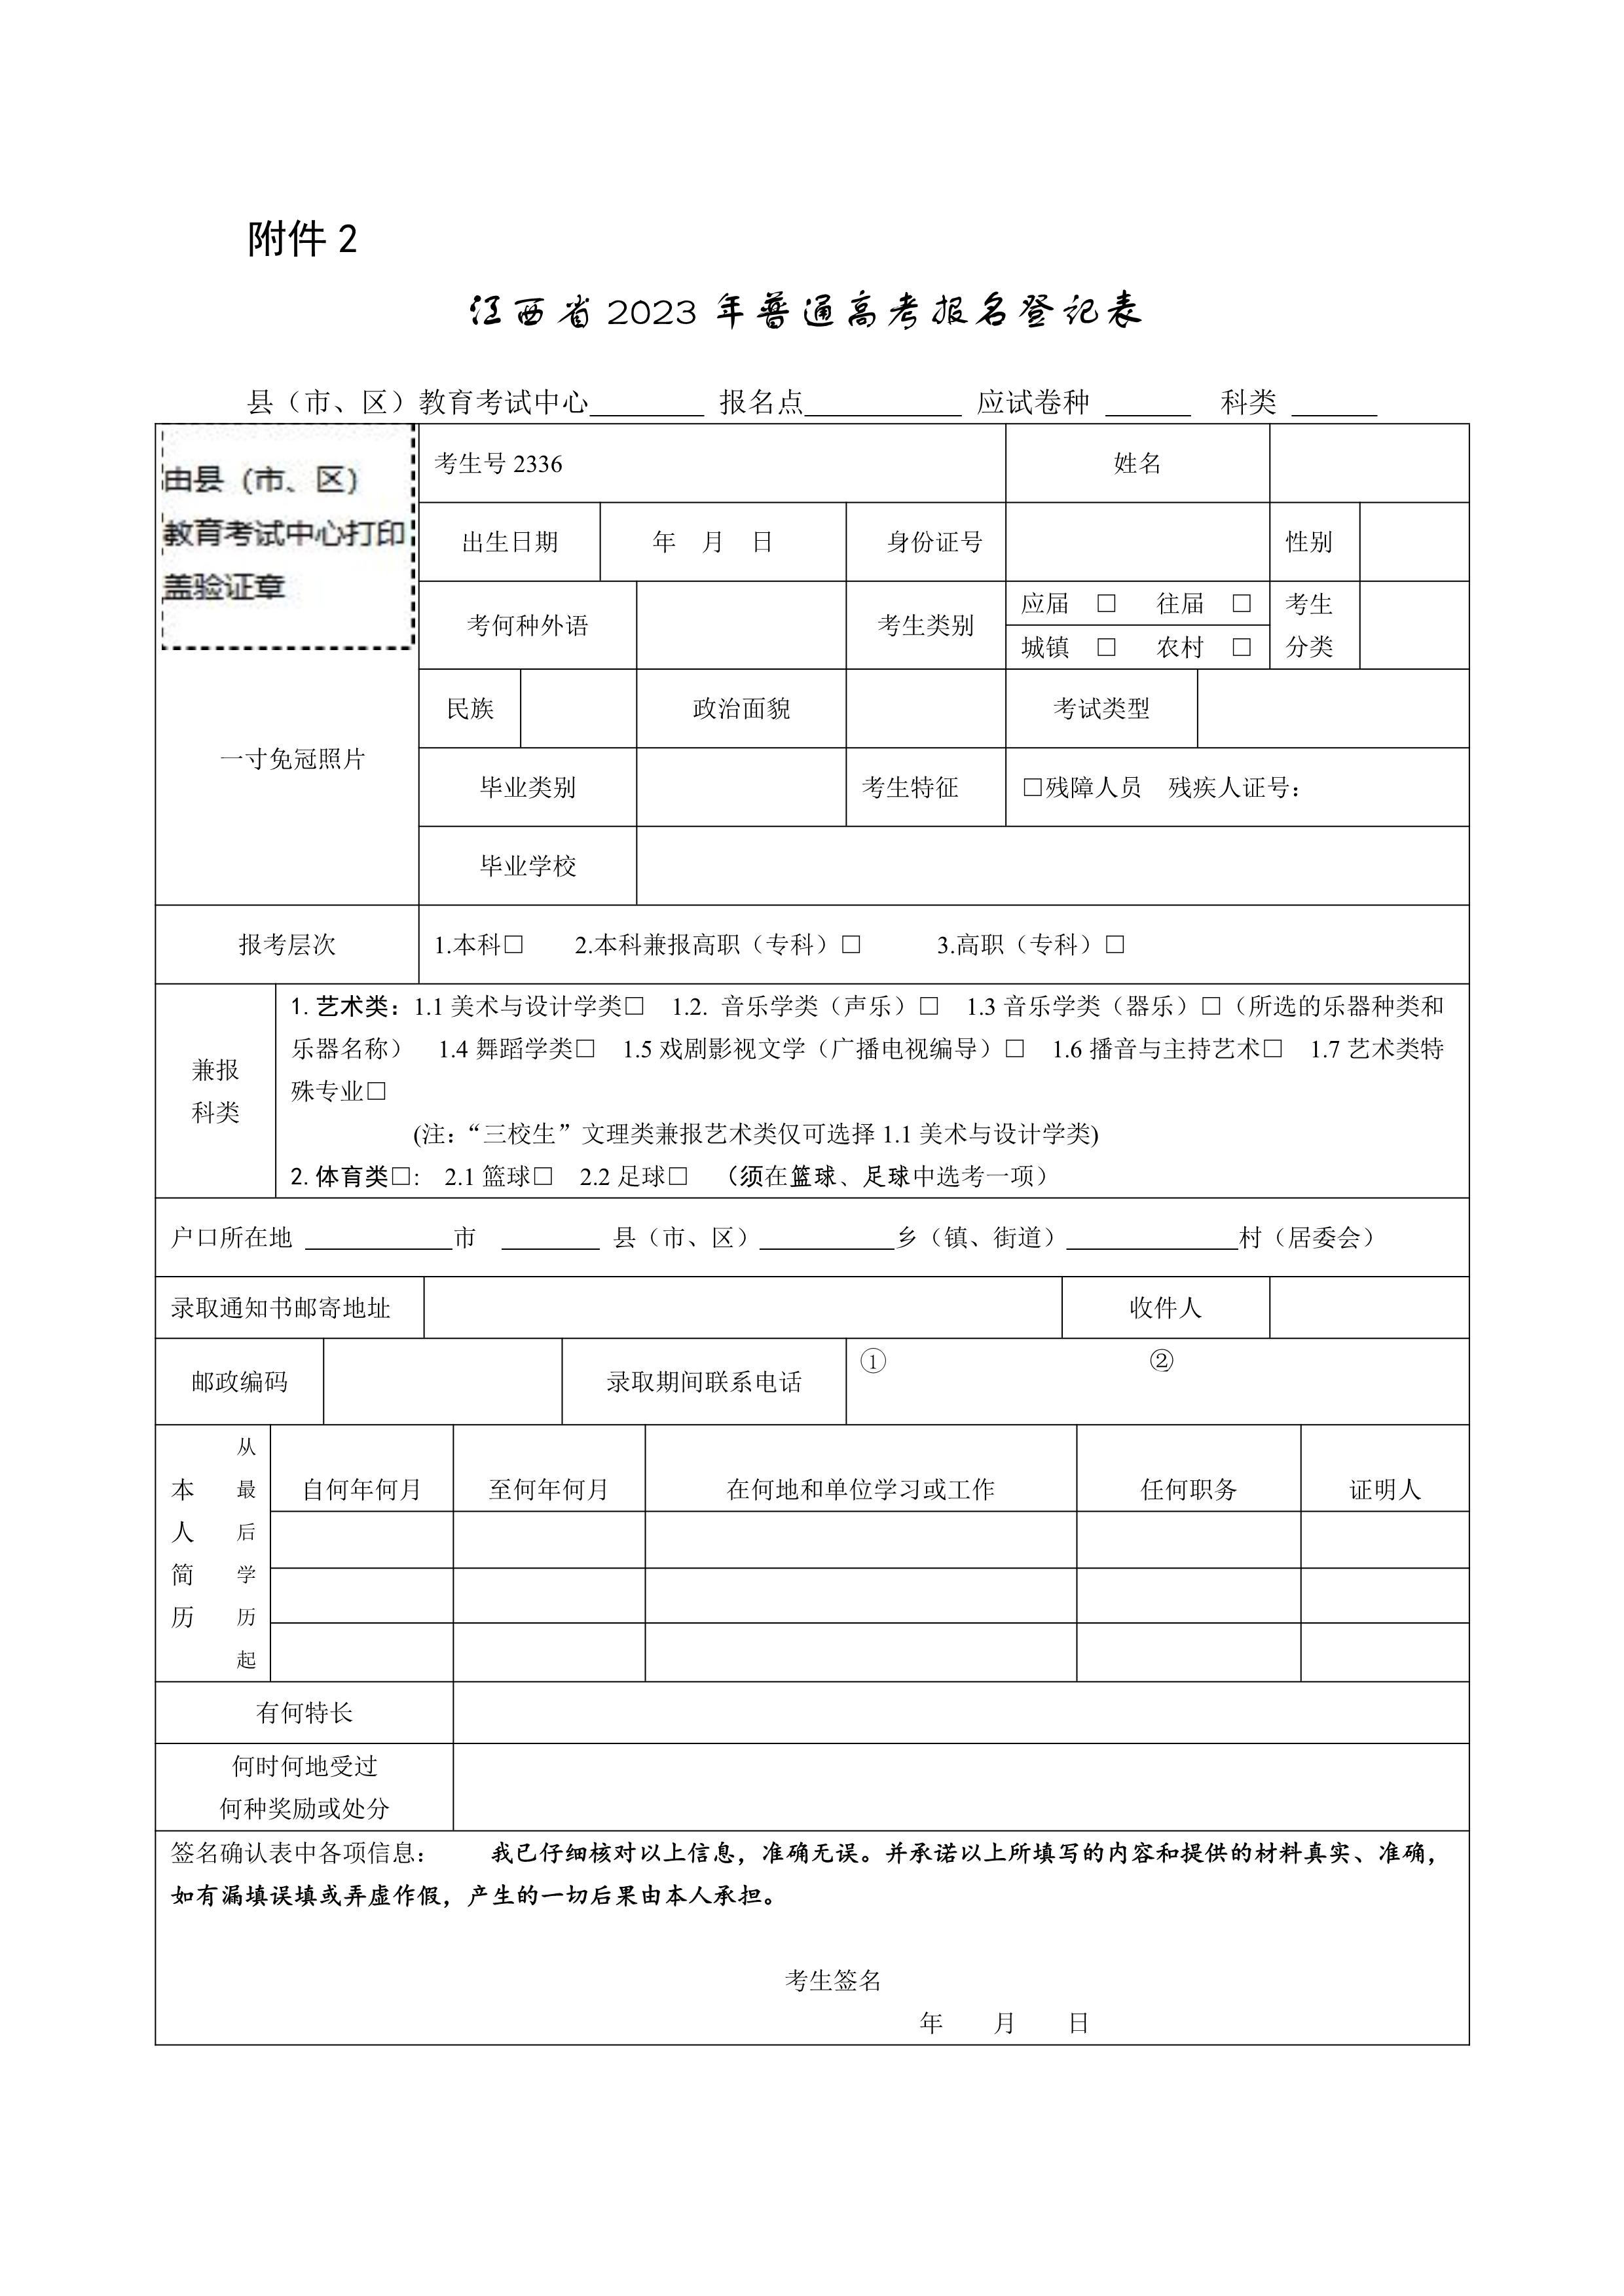 2.江西省2023年普通高考报名登记表_1.jpg